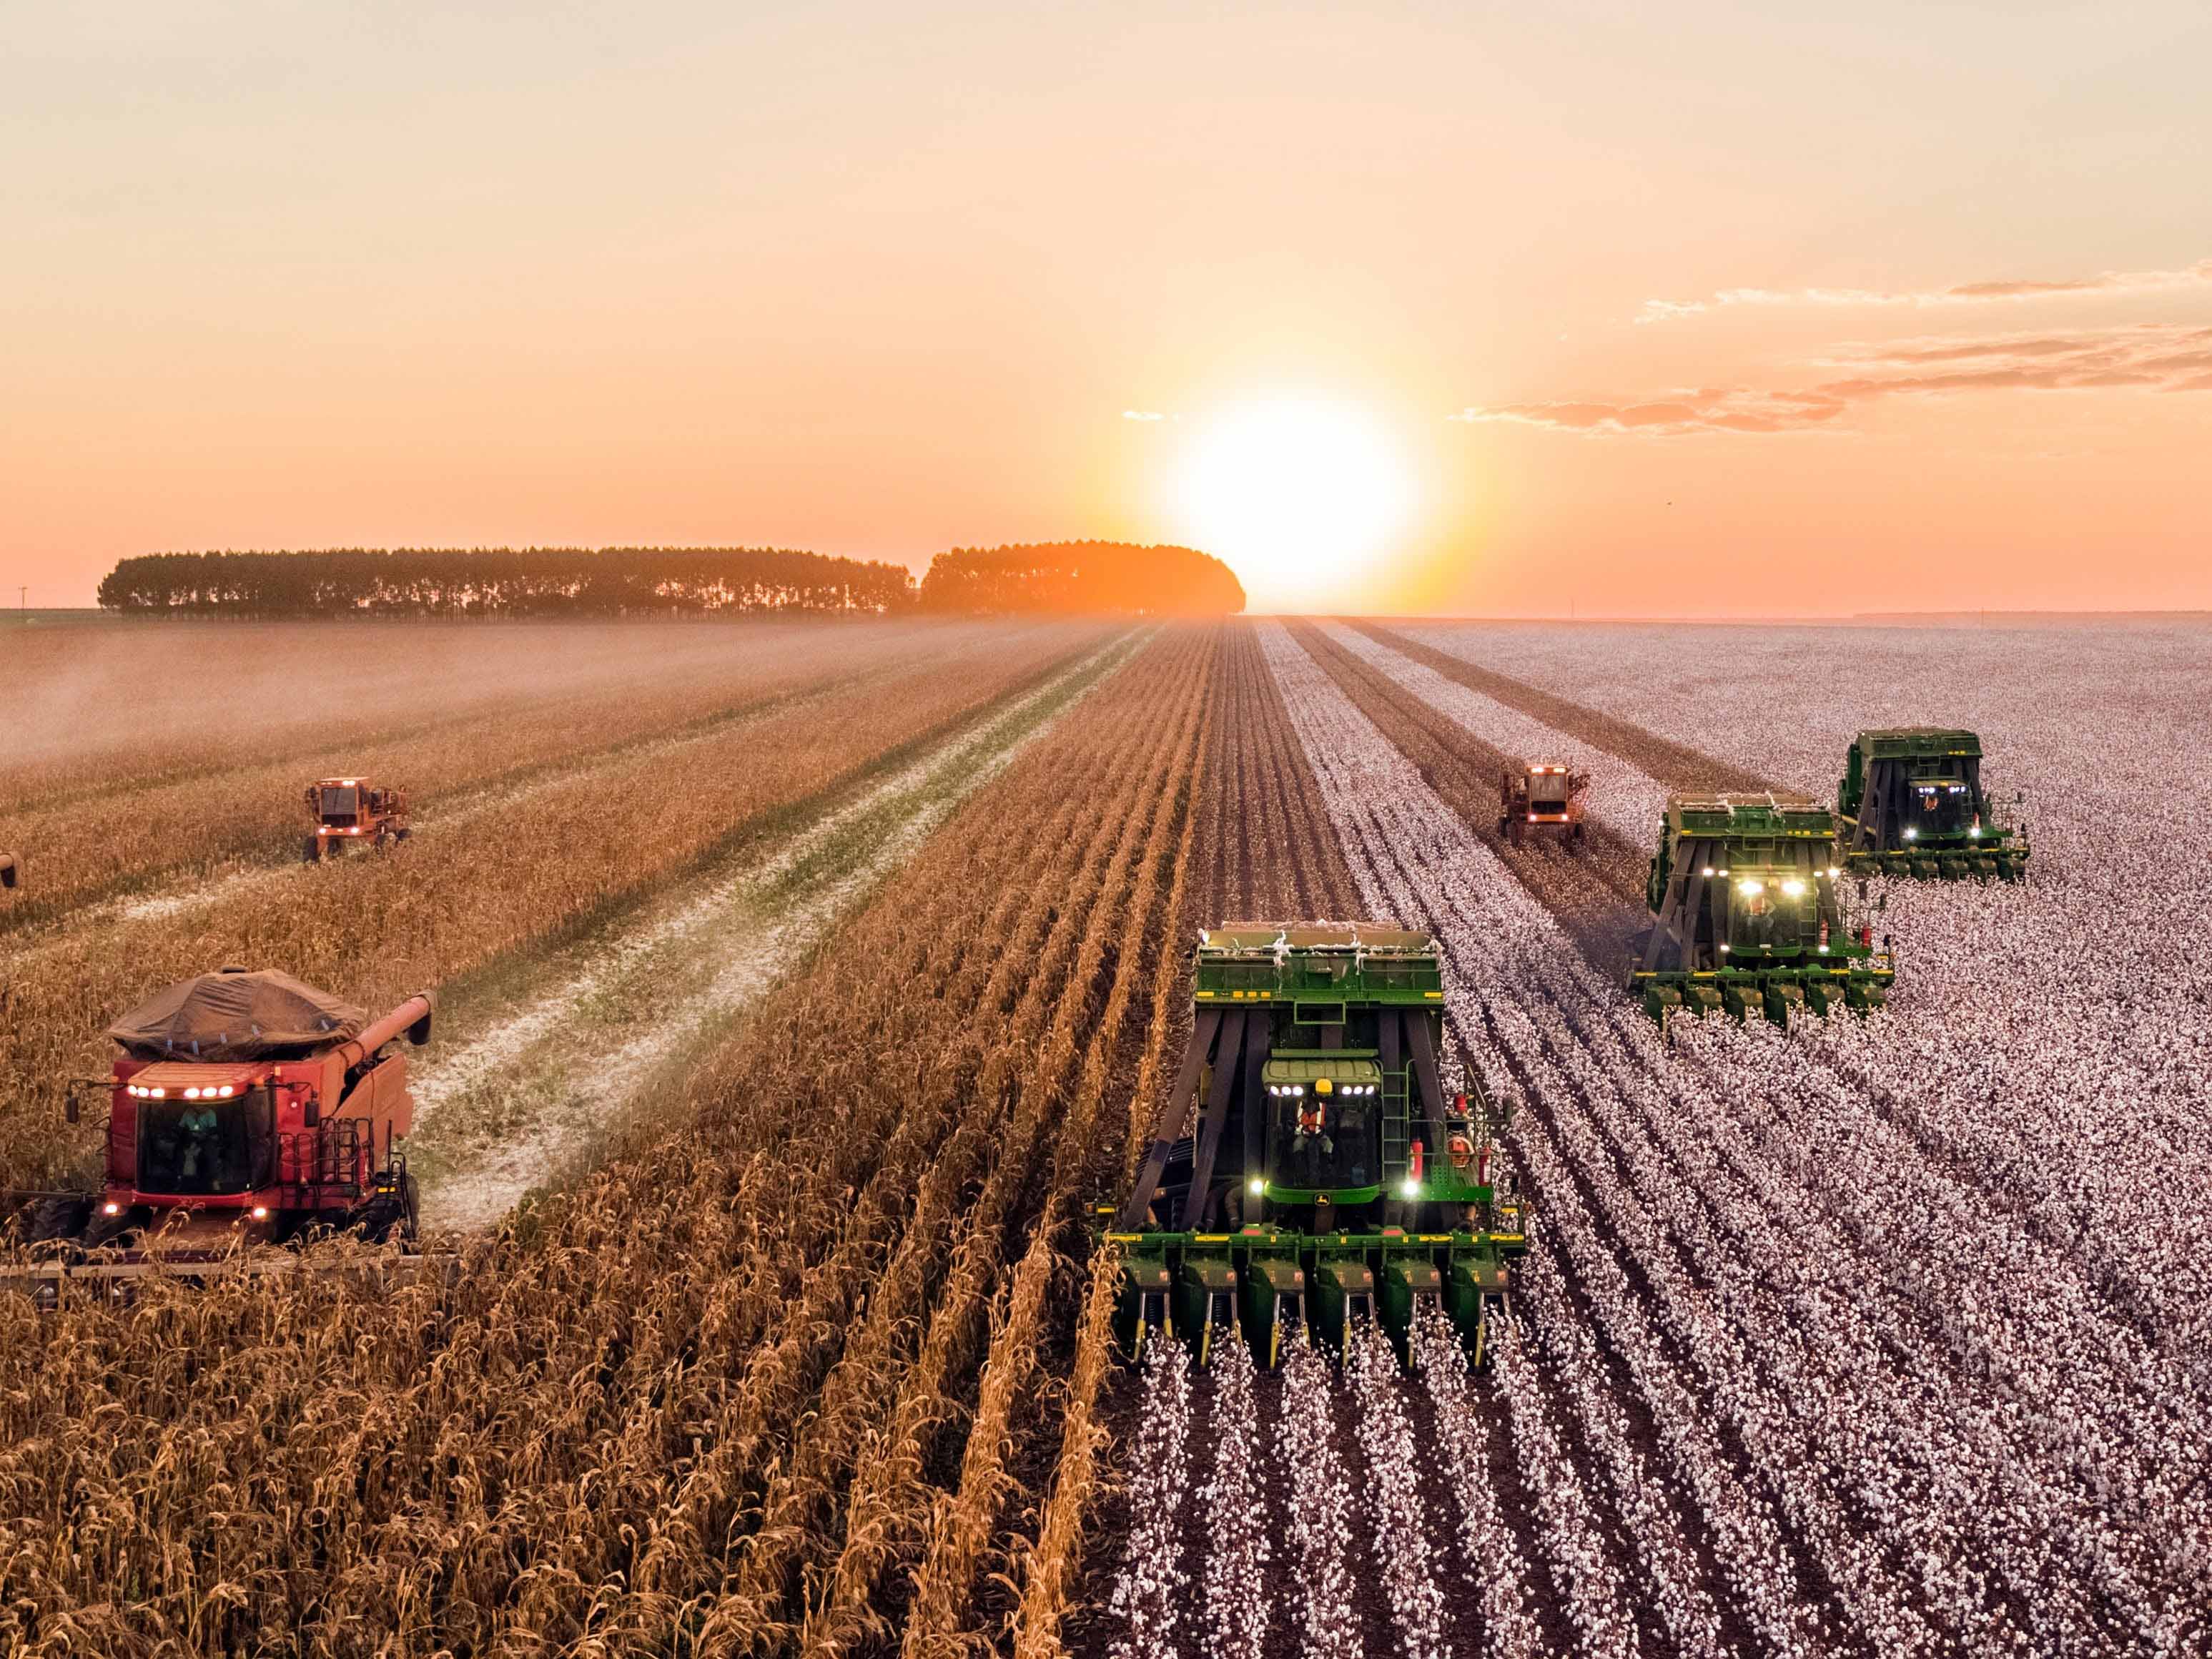 Share farming arrangements: Asset or liability?